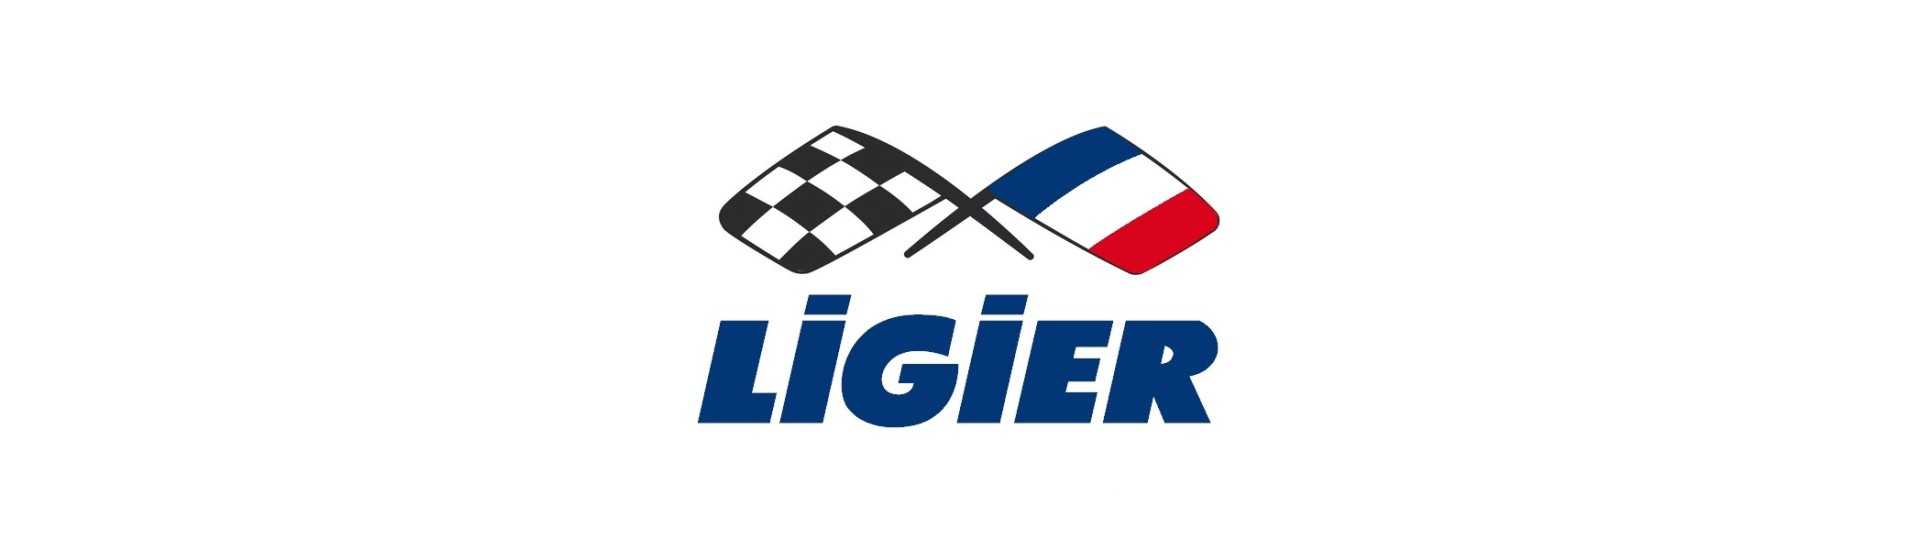 Triangolo anteriore al miglior prezzo per auto senza permesso Ligier